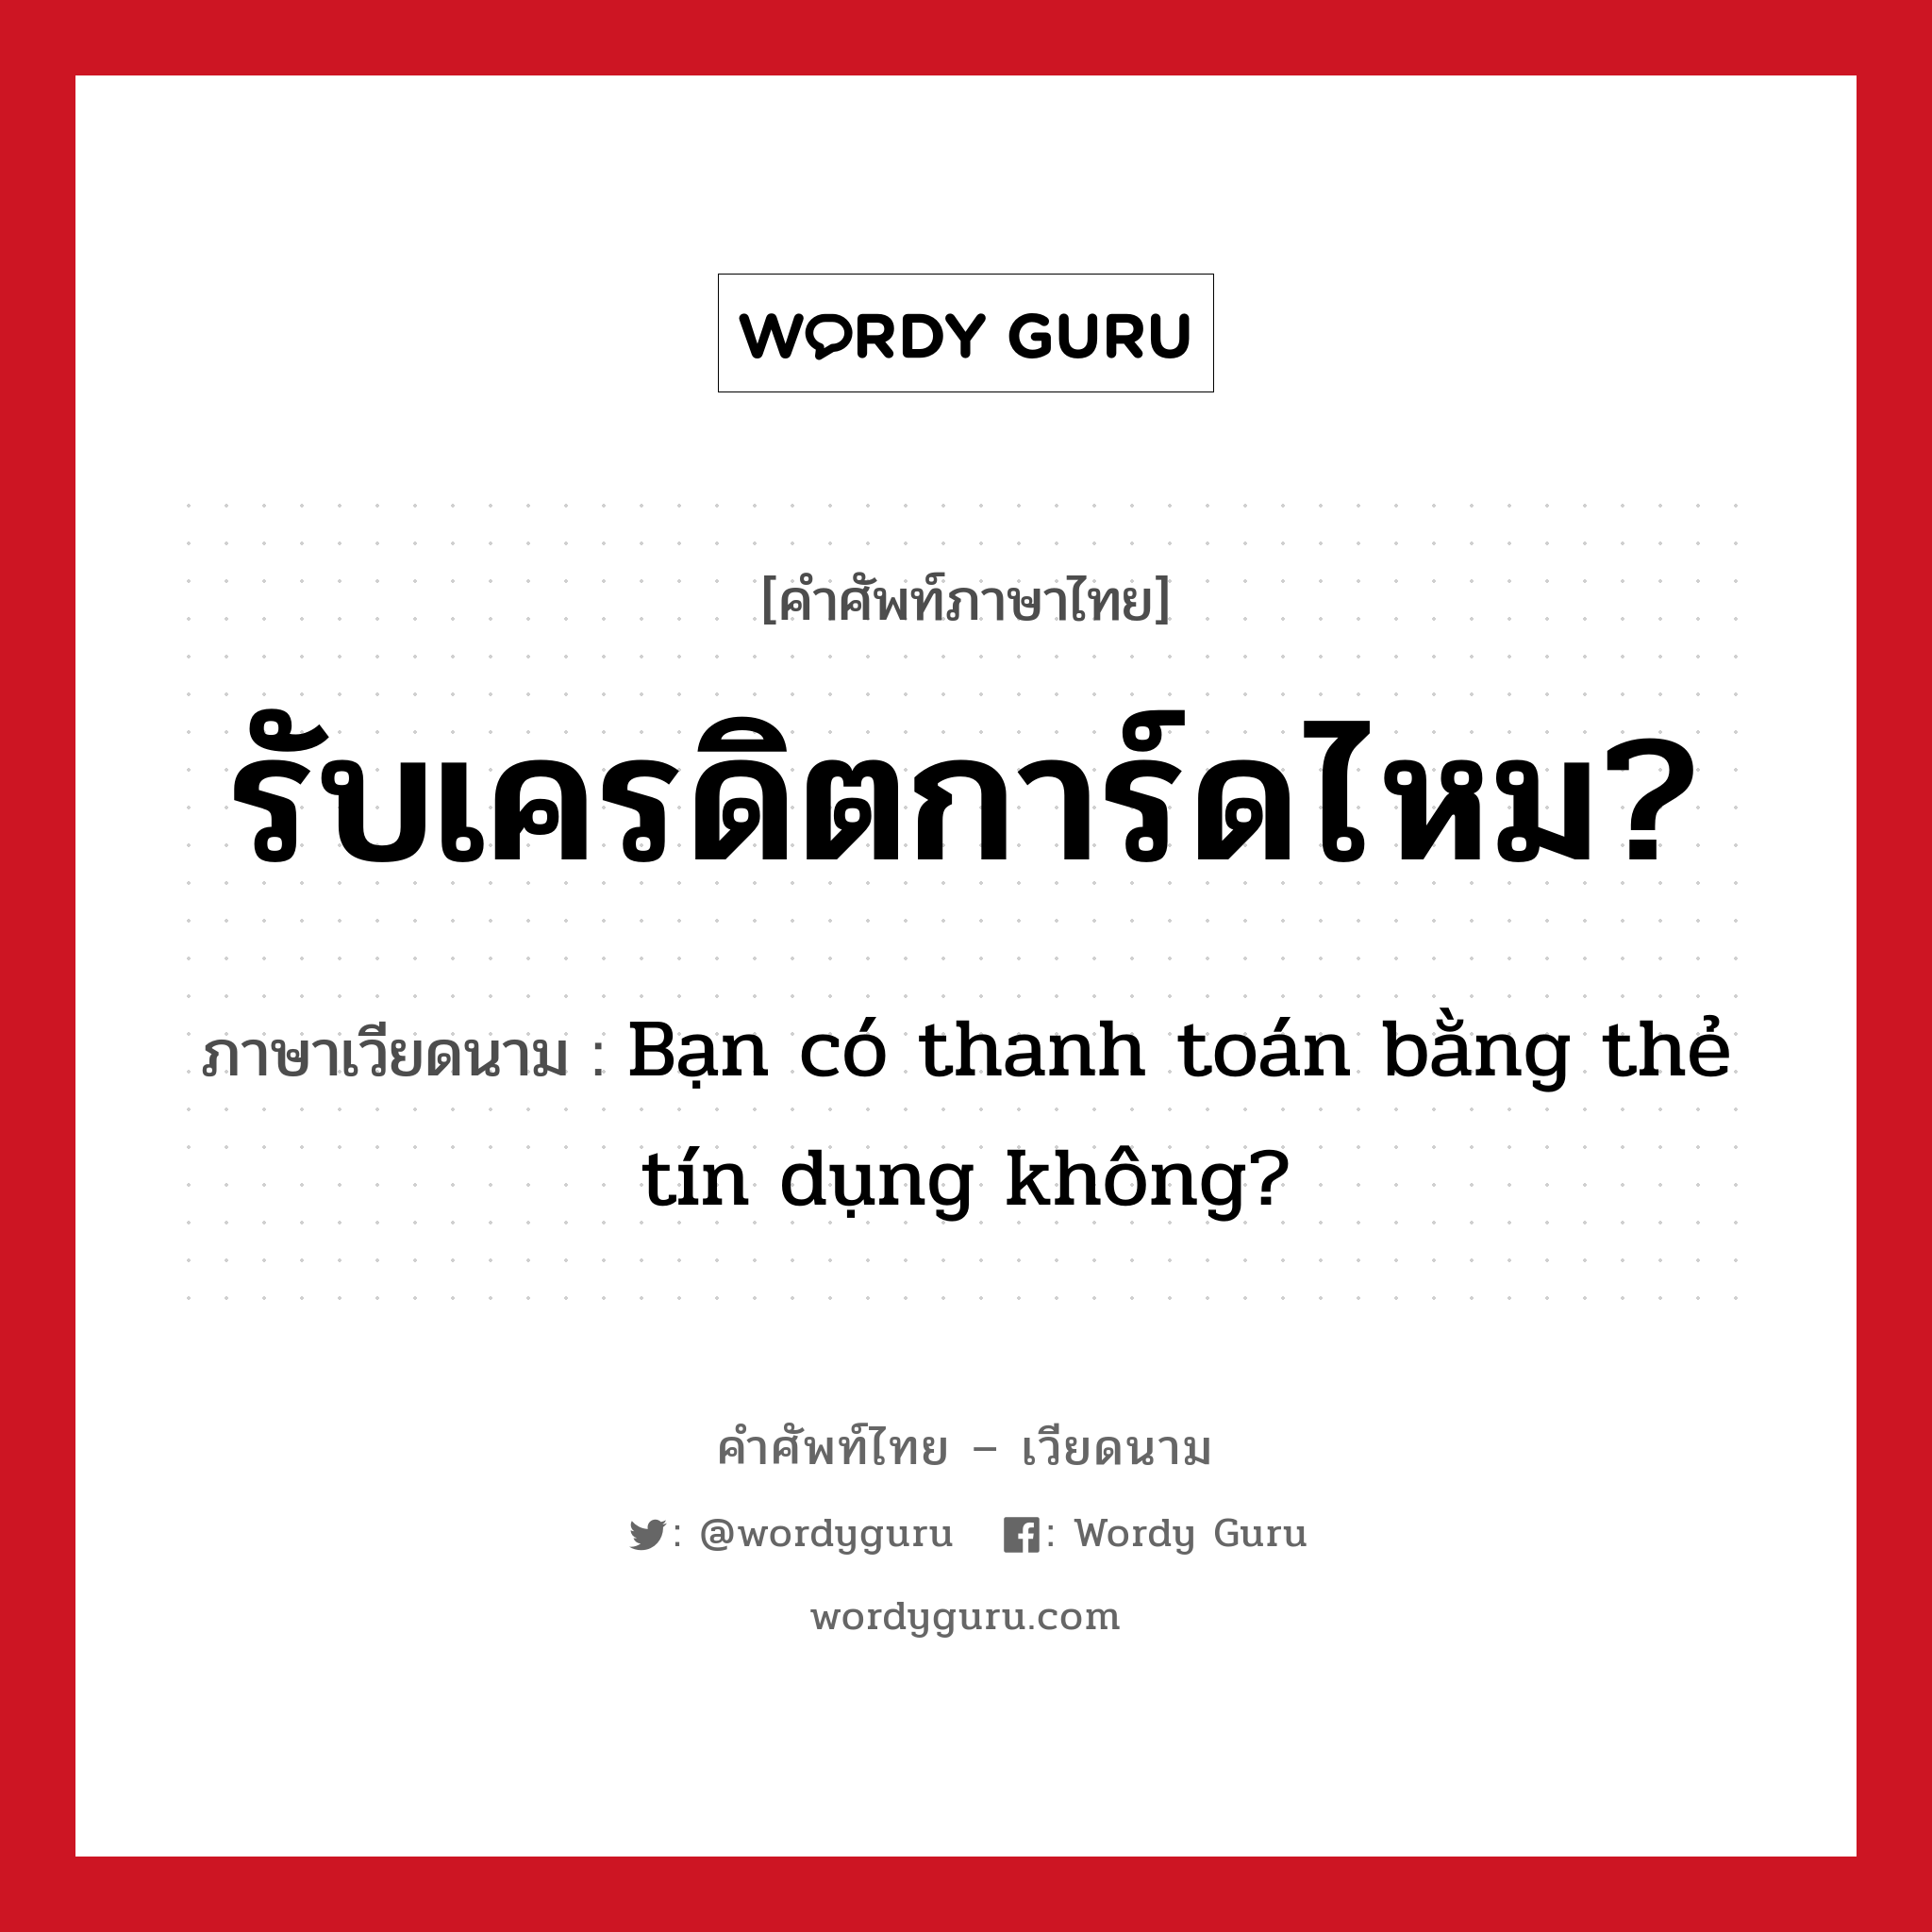 รับเครดิตการ์ดไหม? ภาษาเวียดนามคืออะไร, คำศัพท์ภาษาไทย - เวียดนาม รับเครดิตการ์ดไหม? ภาษาเวียดนาม Bạn có thanh toán bằng thẻ tín dụng không? หมวด อาหาร หมวด อาหาร